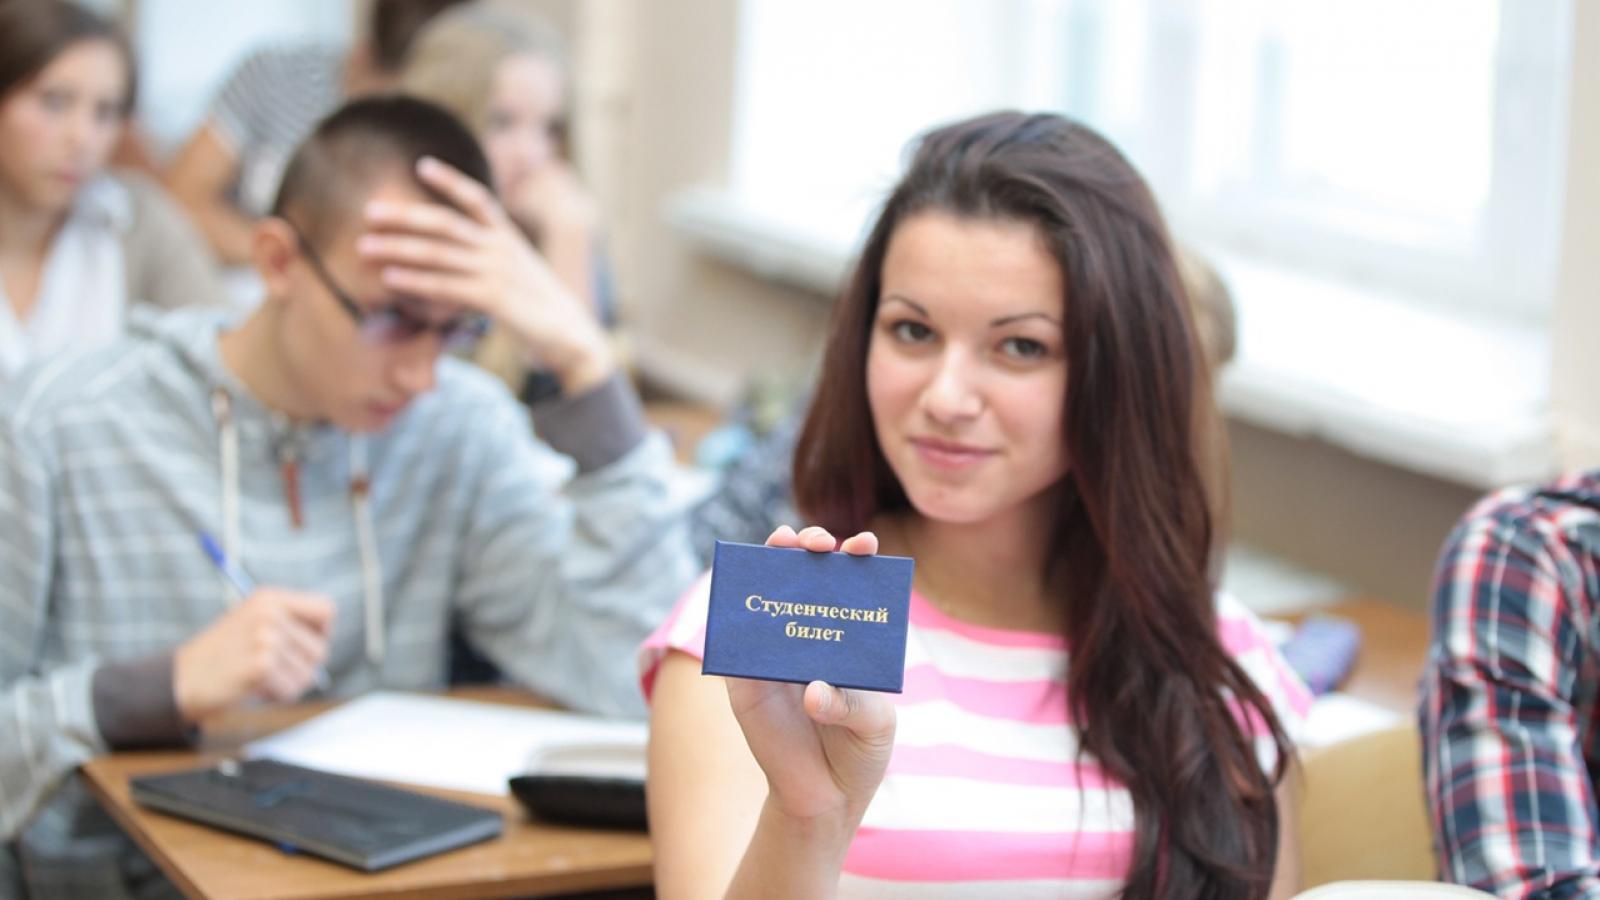 Студентом быть не просто. Зачетка студента. Студент показывает. Российские студенты с зачетками. Студент со студенческим билетом.